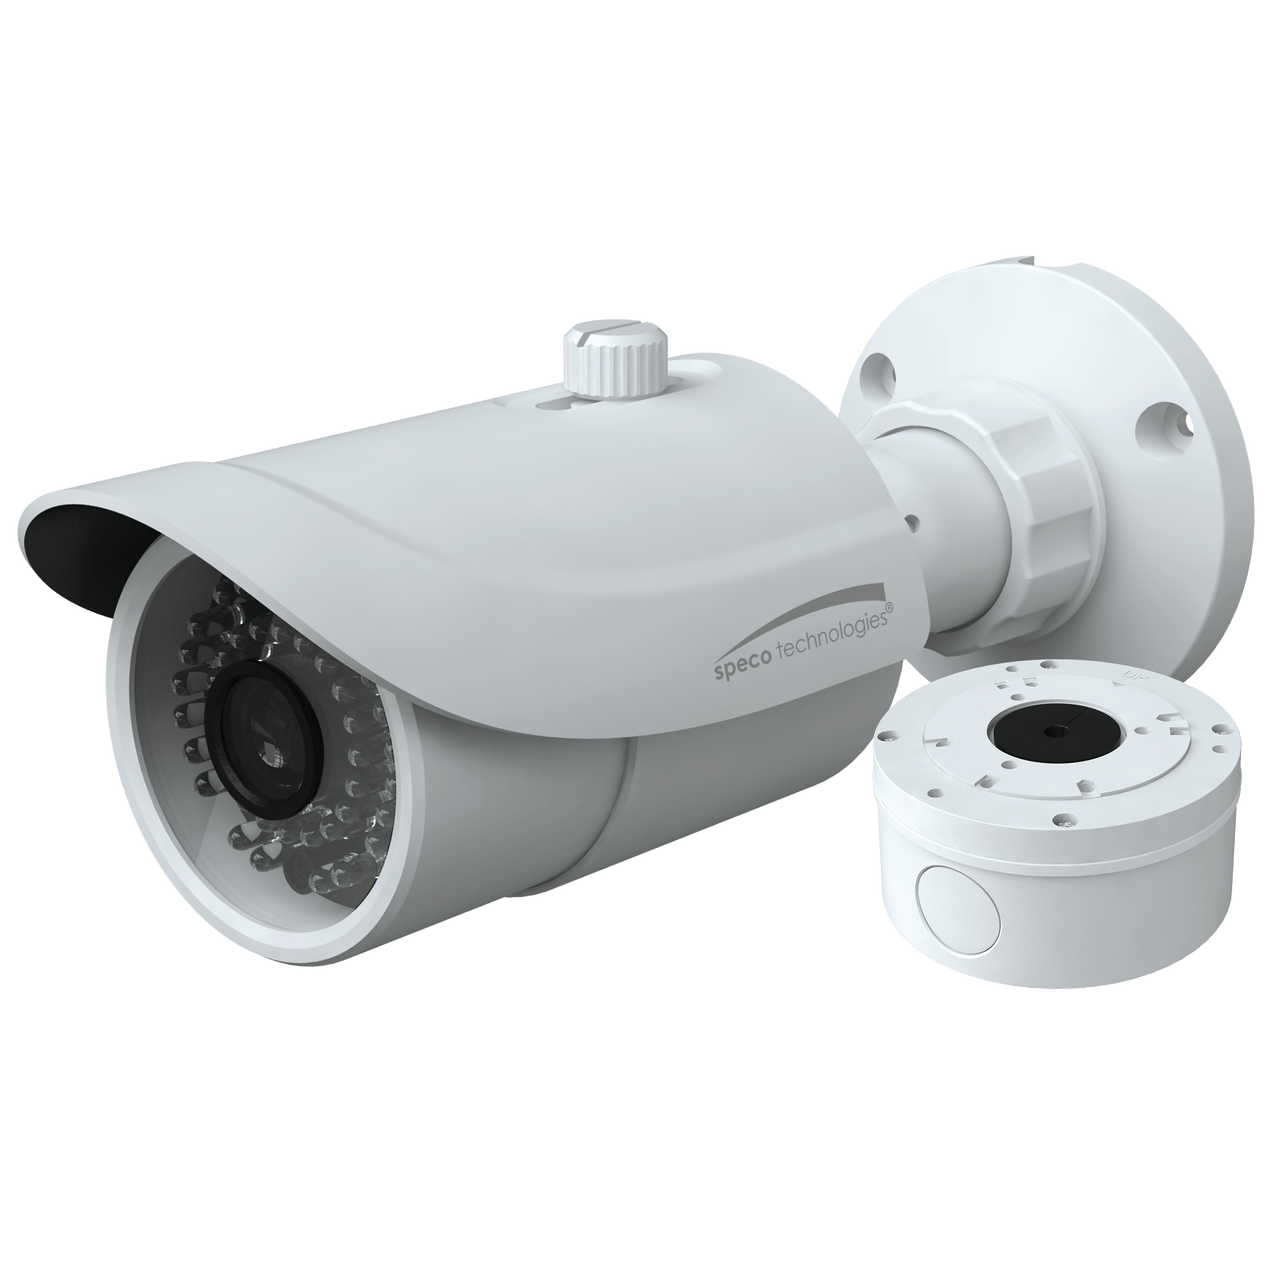 Speco Technologies SPE-H8B6M 4K HD-TVI Bullet Camera, IR, 2.8-12mm Motorized Lens, Included Junc Box, White (SPE-H8B6M)